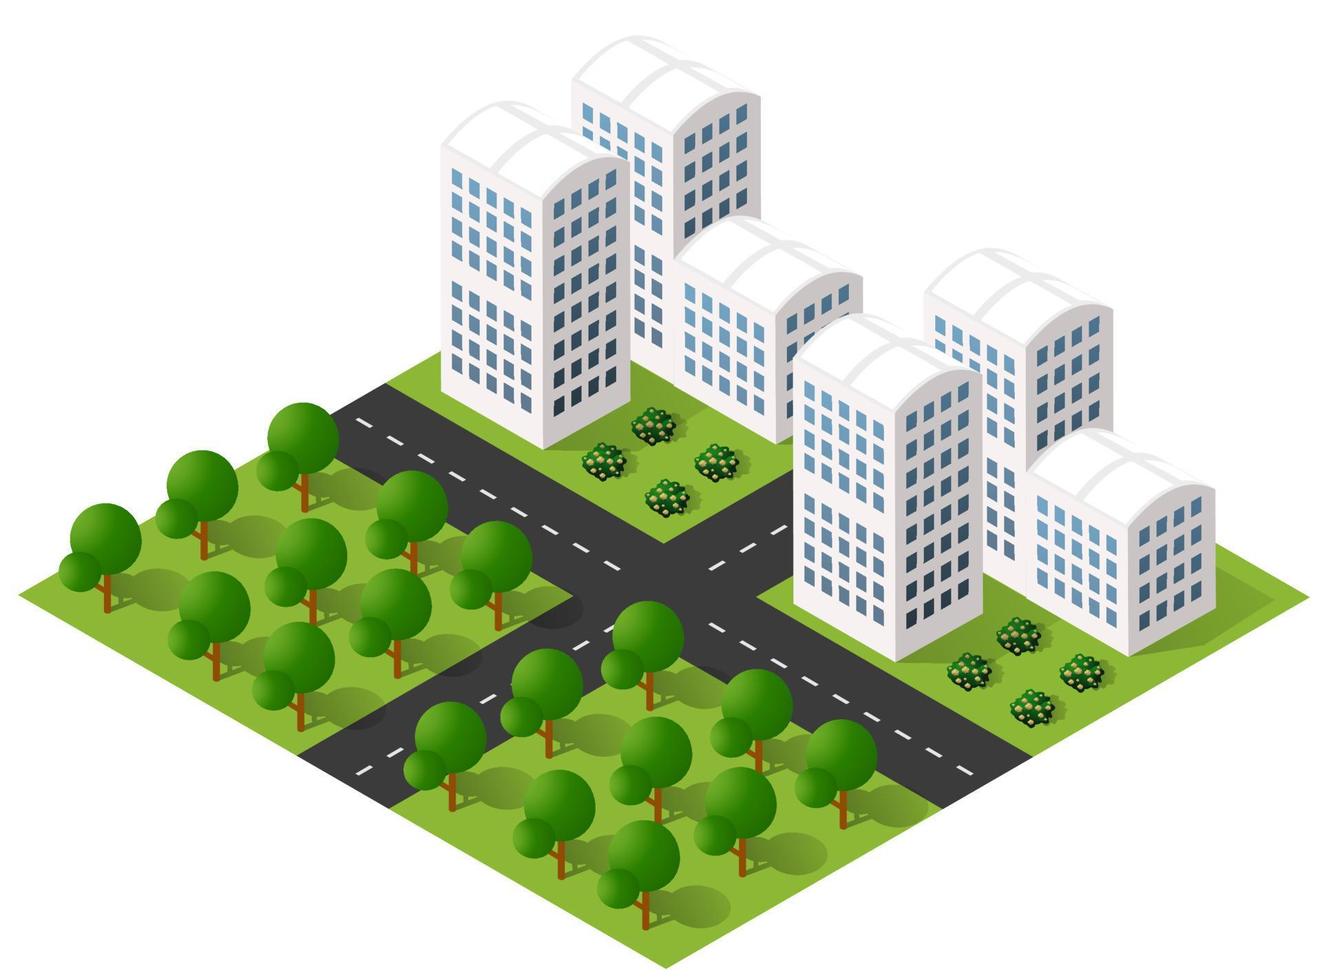 isometrische 3d-illustration stadtgebiet mit vielen häusern und wolkenkratzern, straßen, bäumen und fahrzeugen vektor